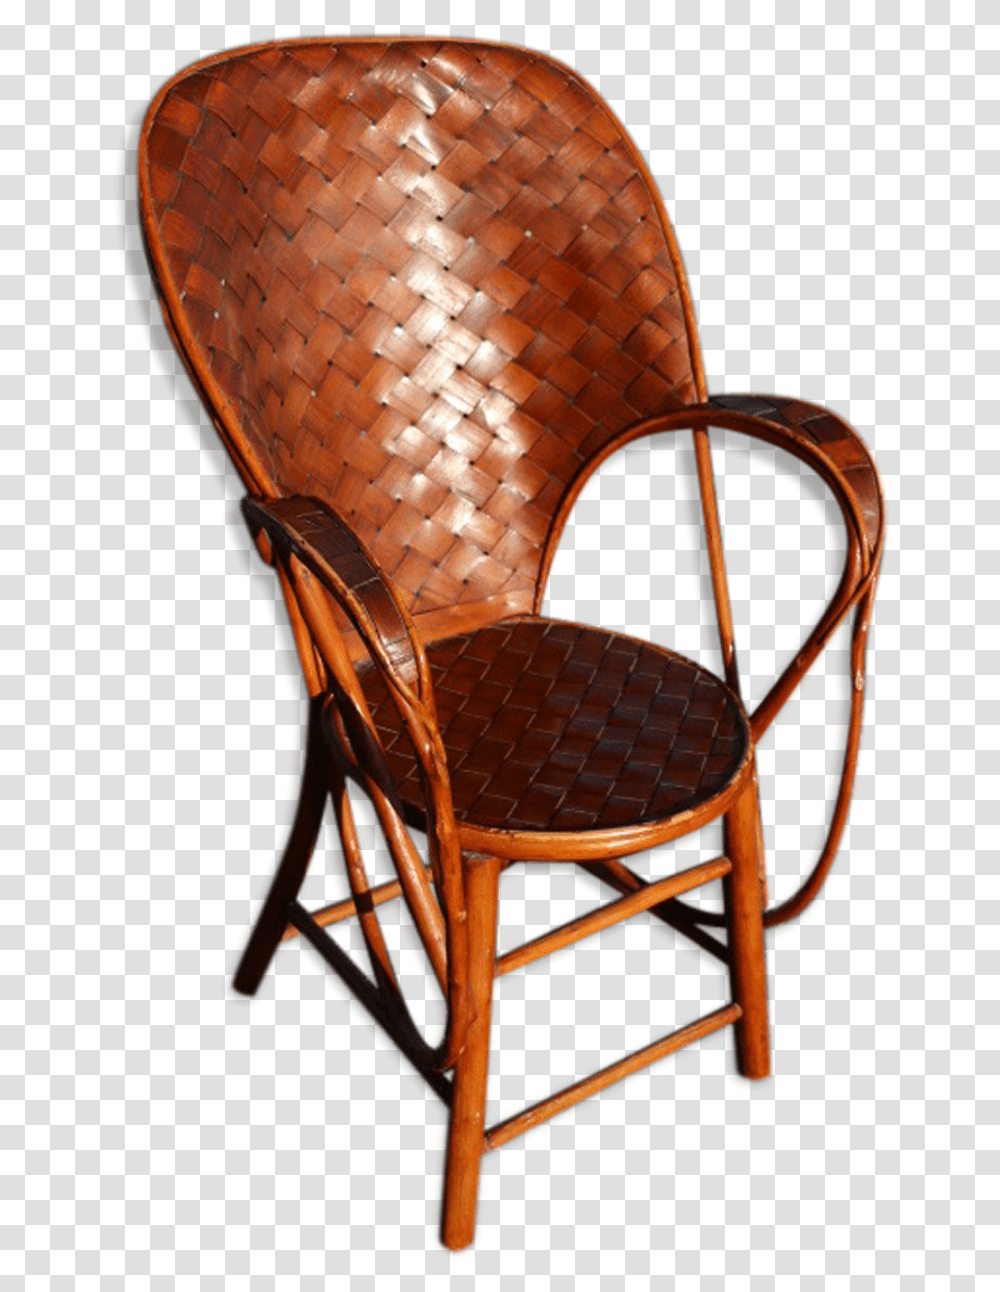 Armchair Rattan Banana Leaves Chair, Furniture, Cushion Transparent Png